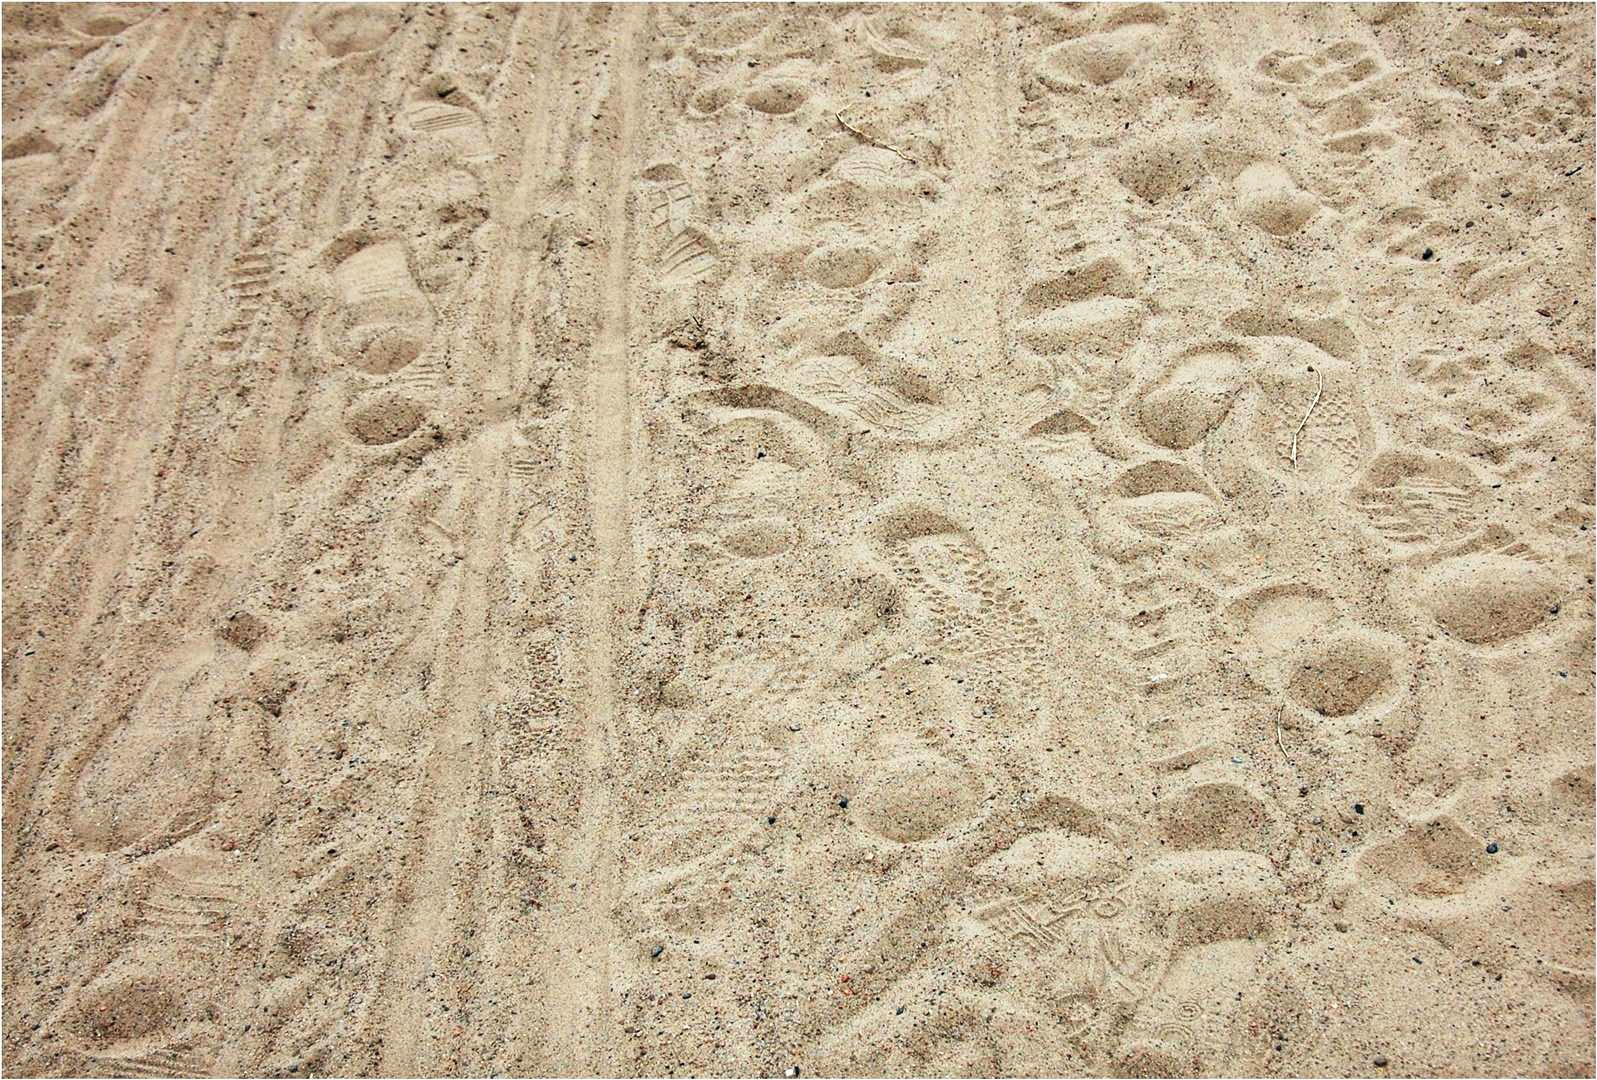 Spuren im märkischen Sand